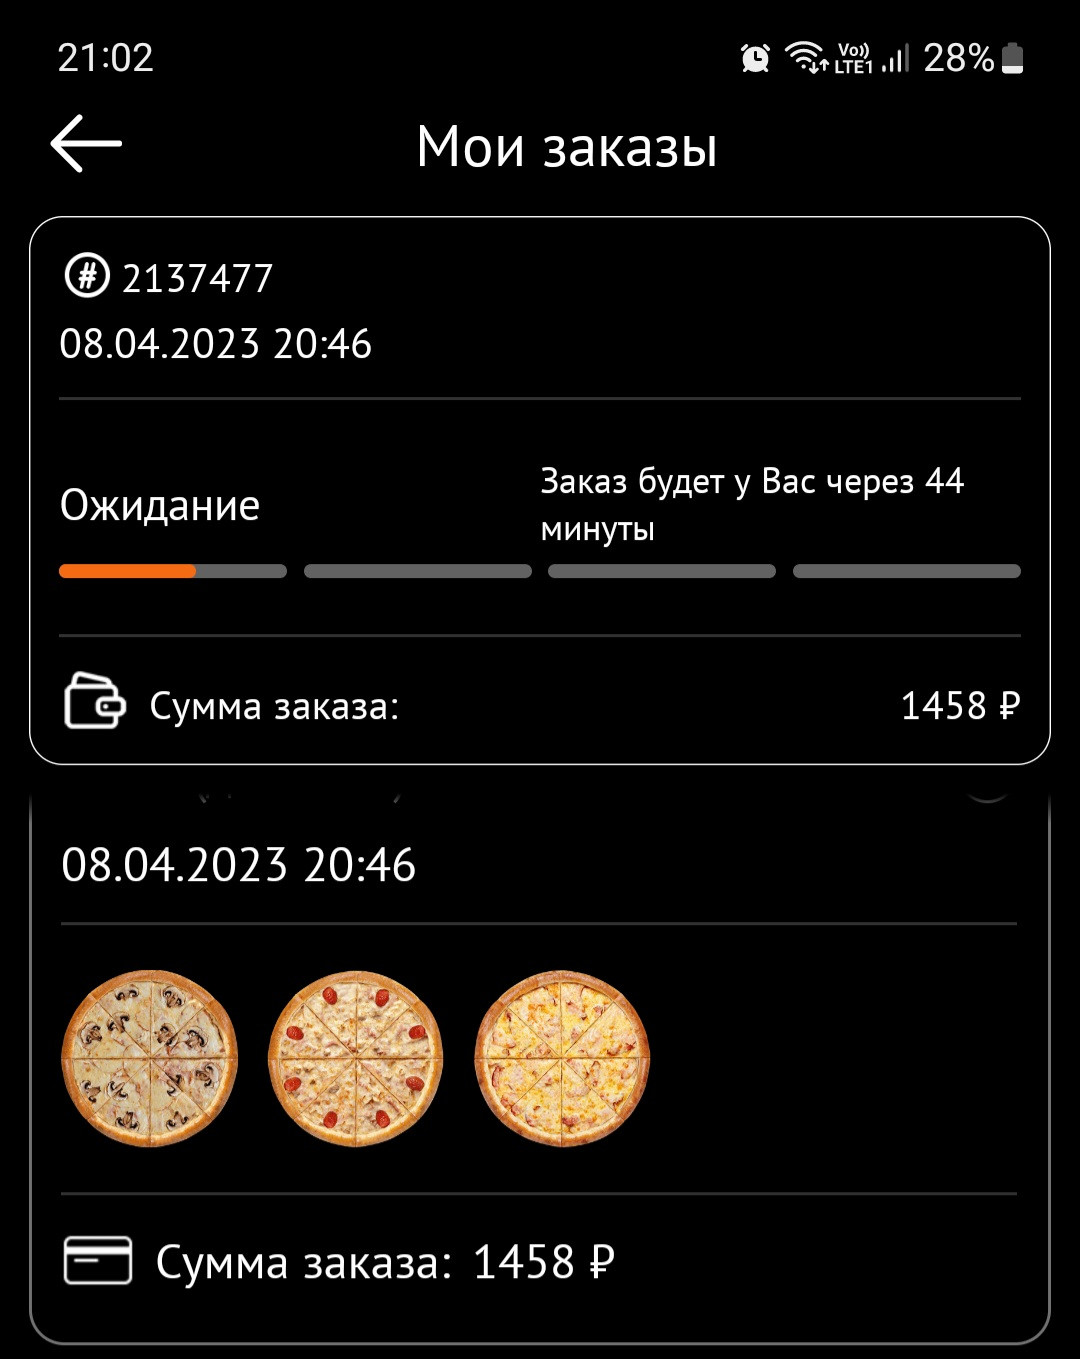 ниндзя пицца в красноярске режим работы фото 79